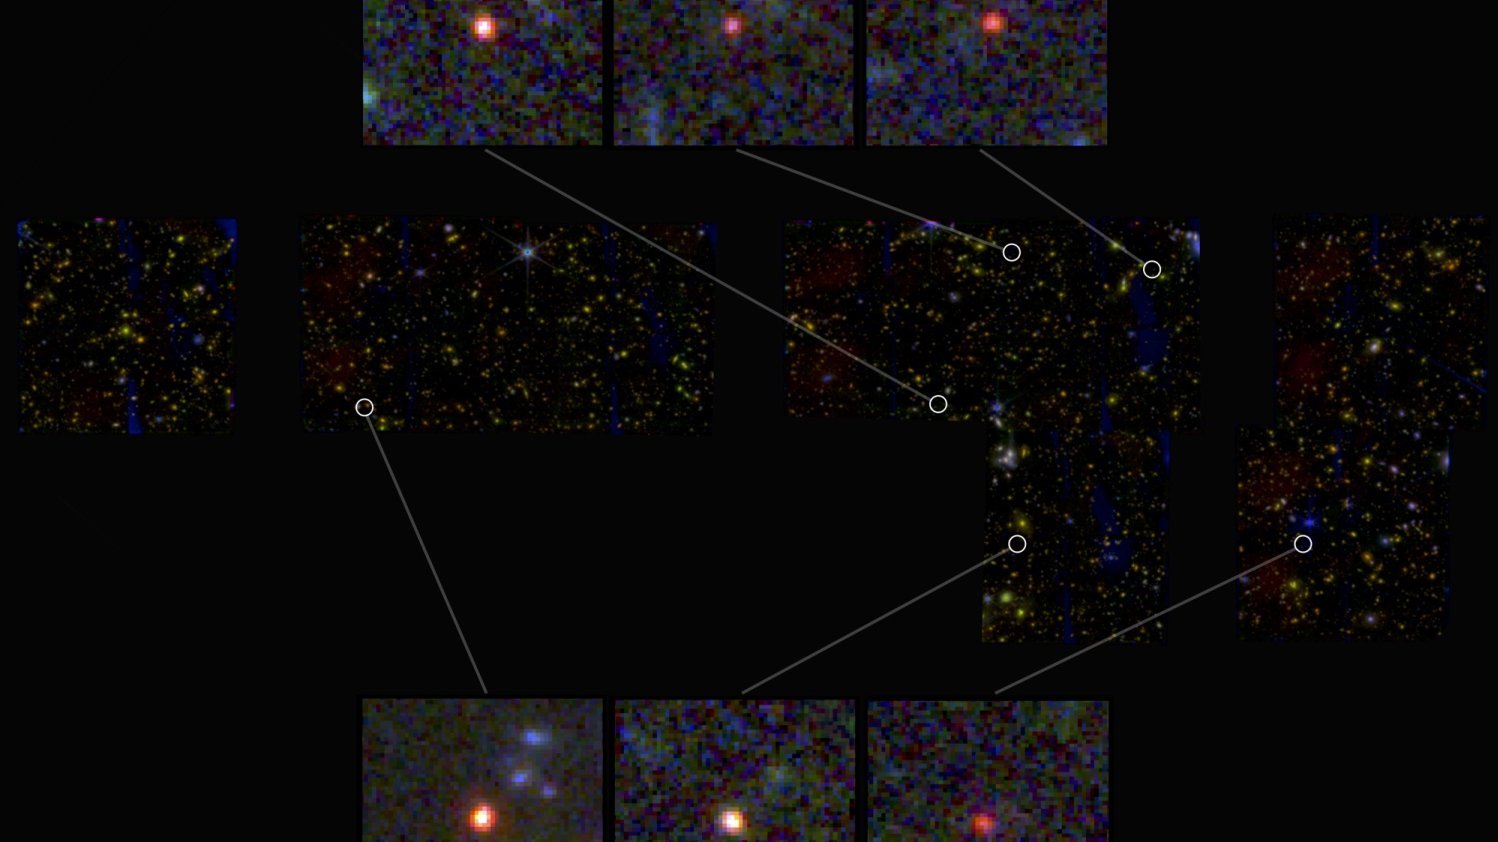 Die sechs neu entdeckten Galaxien, sichtbar als helle rote Punkte. 